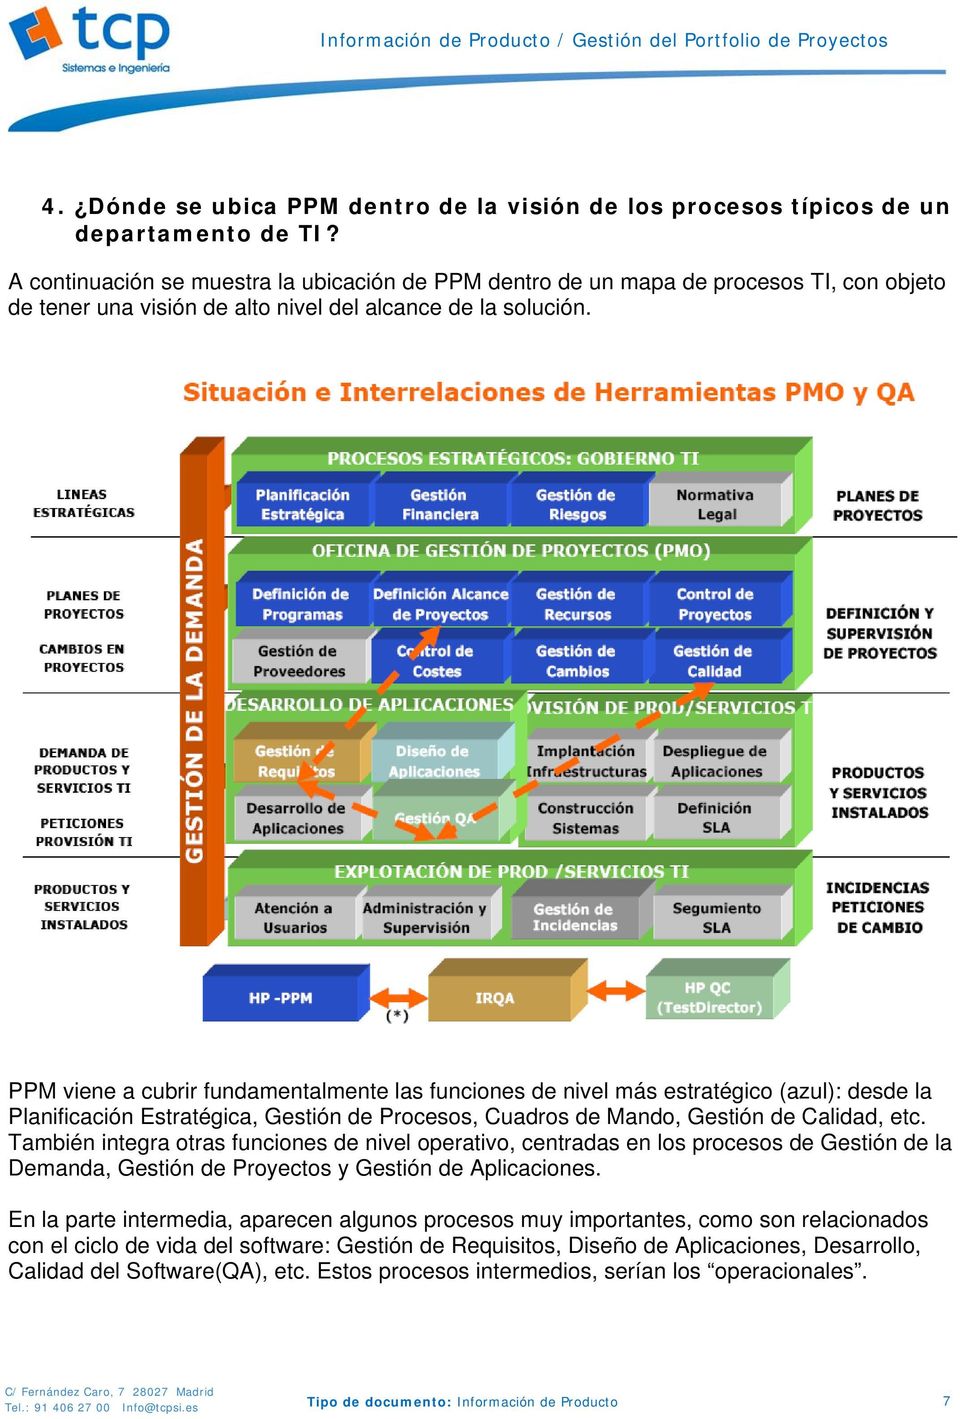 PPM viene a cubrir fundamentalmente las funciones de nivel más estratégico (azul): desde la Planificación Estratégica, Gestión de Procesos, Cuadros de Mando, Gestión de Calidad, etc.